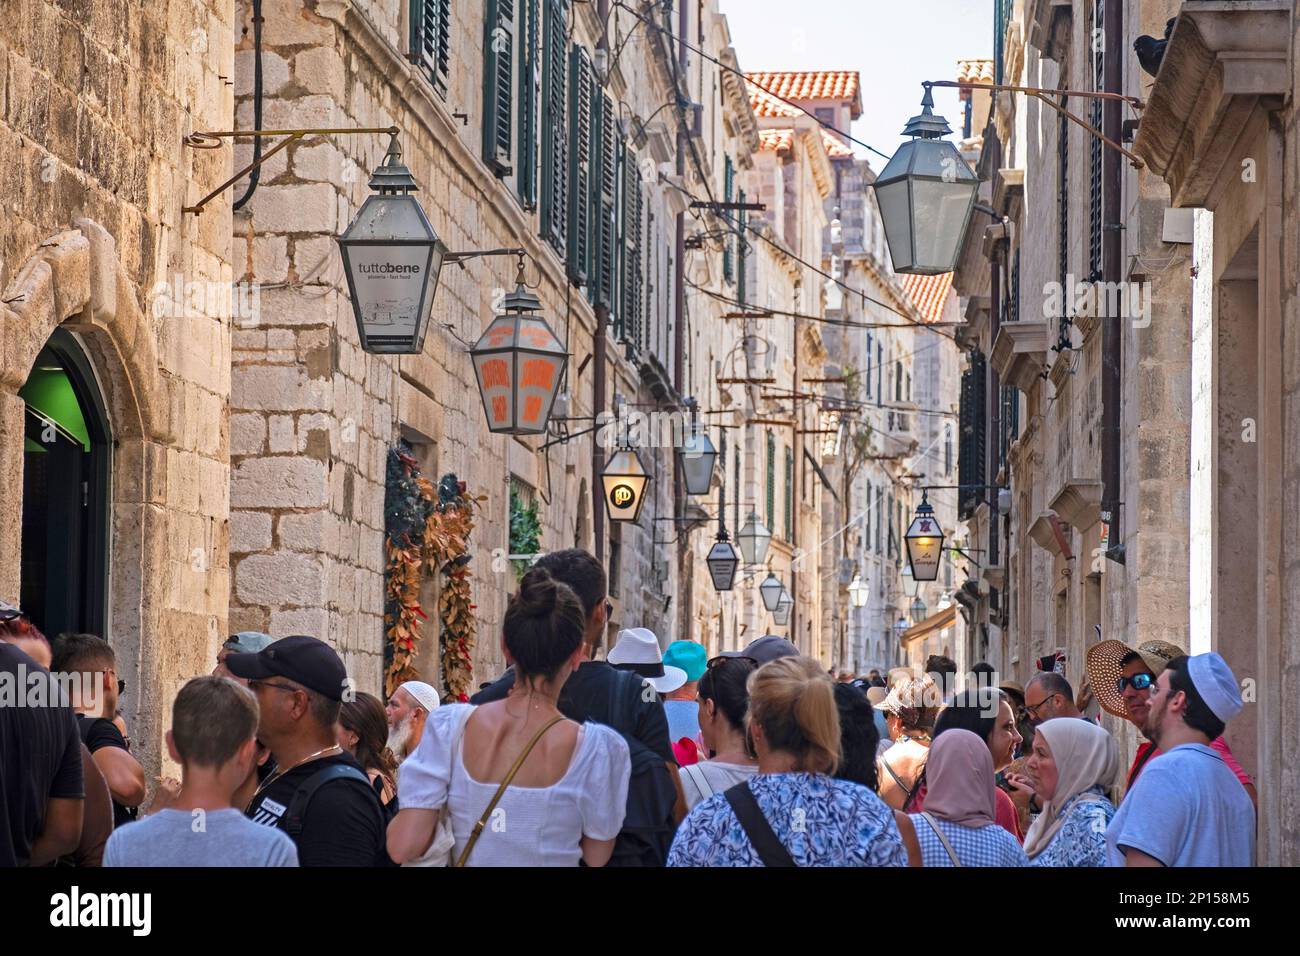 Touristen in der belebten engen Gasse Ulica od Puča / Straße der Brunnen in der Altstadt, historisches Stadtzentrum von Dubrovnik, süddddalmatisches Kroatien Stockfoto